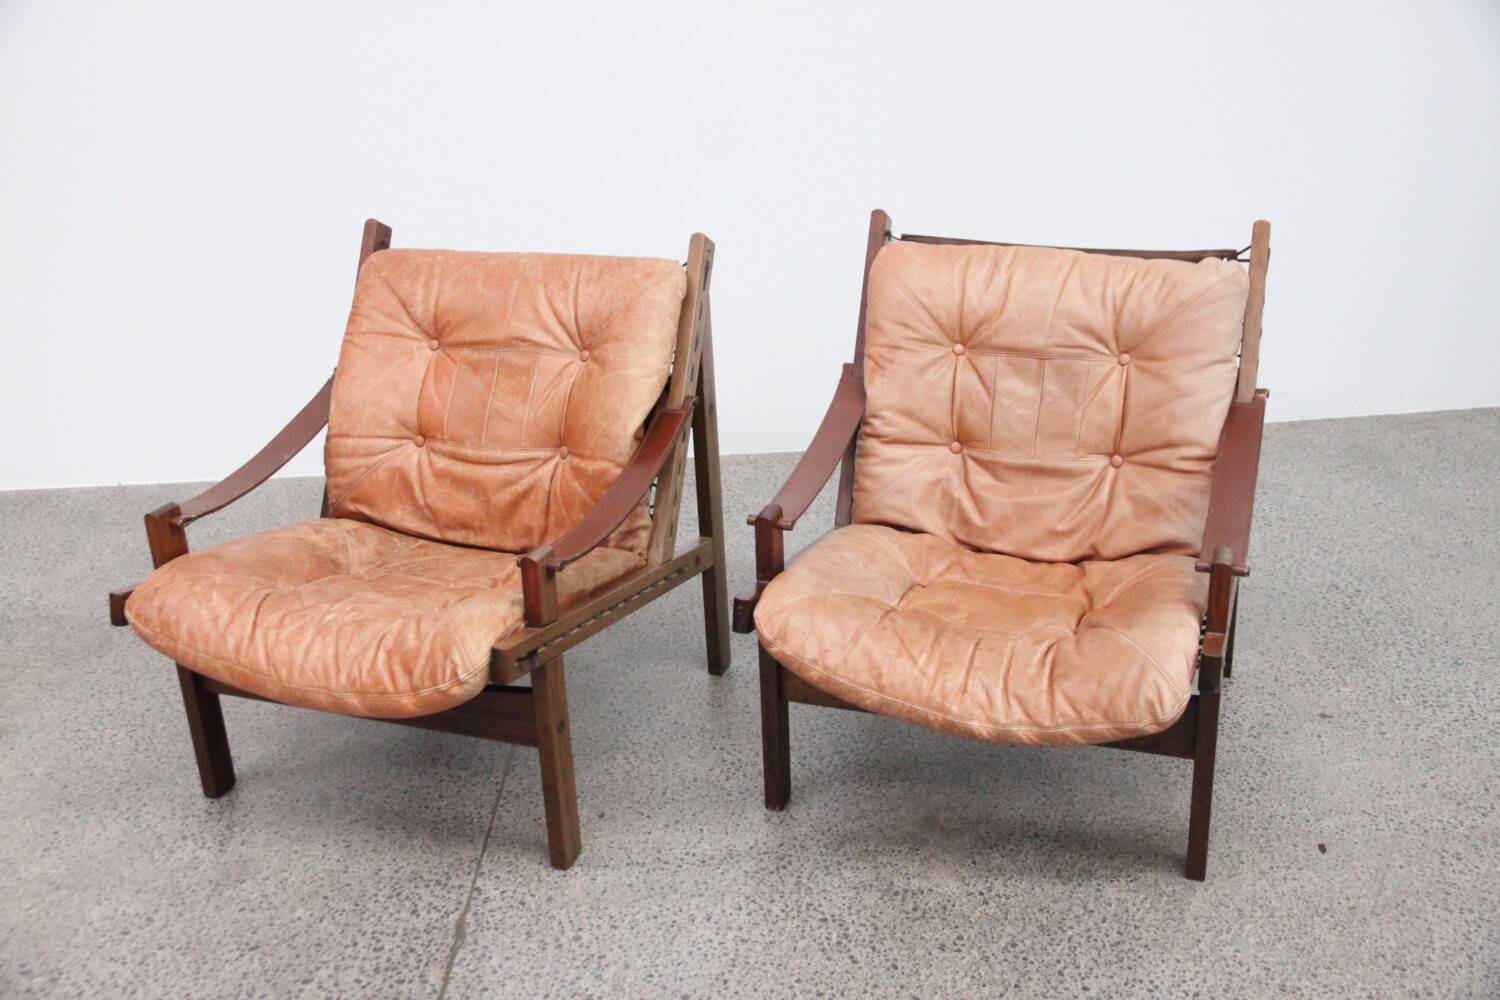 Tan Safari Chairs sold